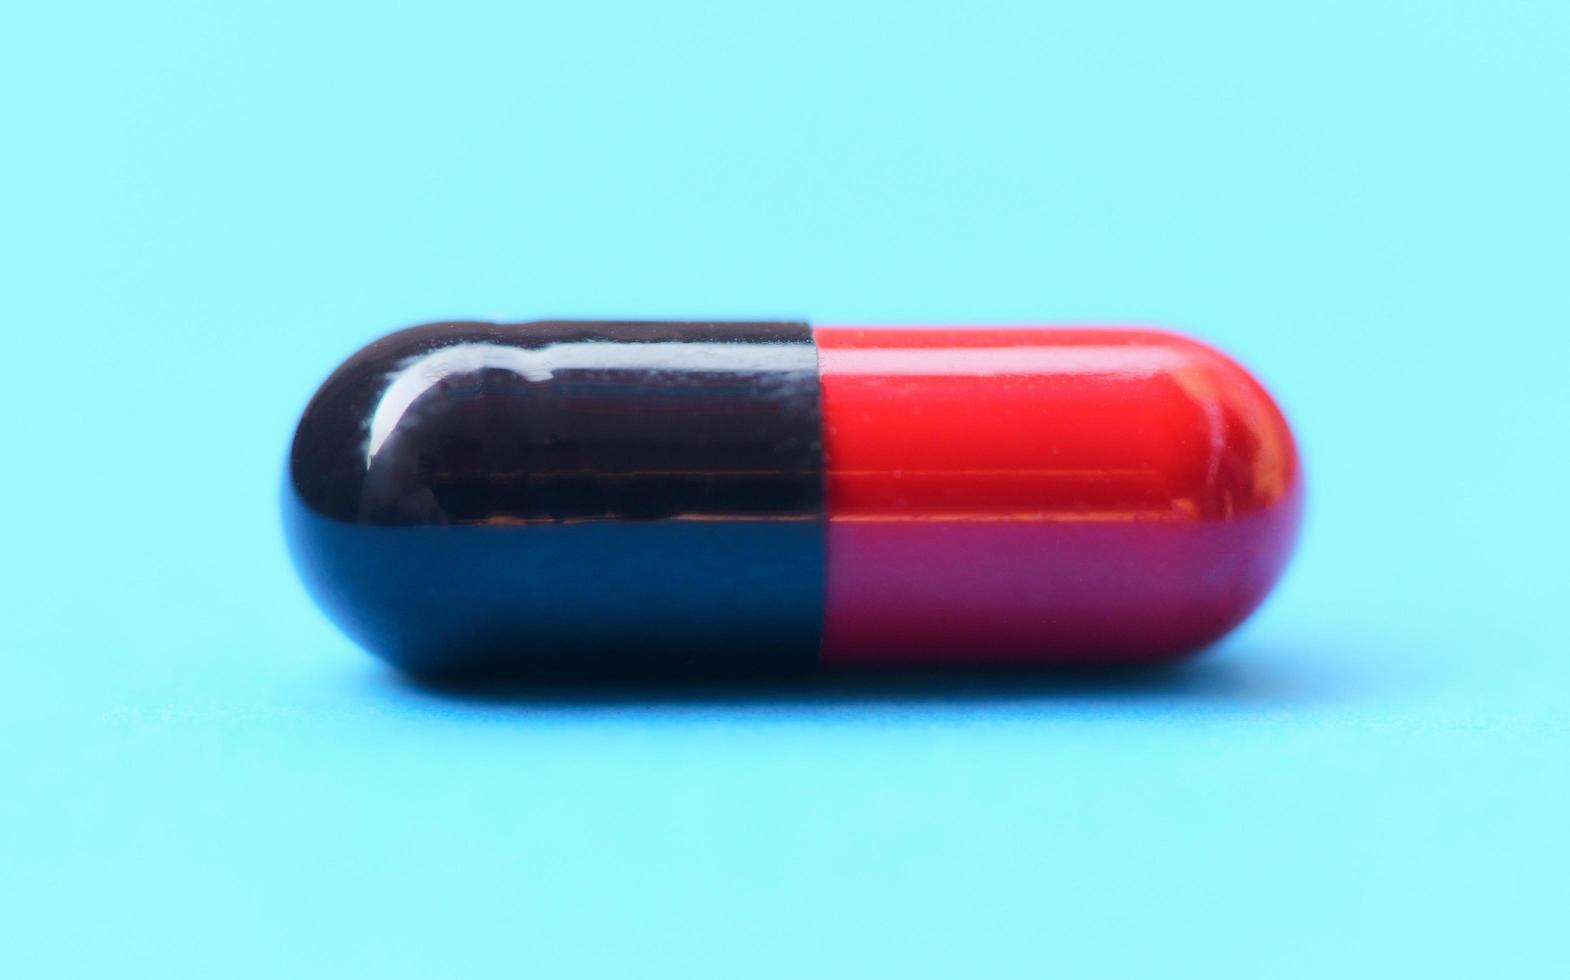 kapselpiller selektivt fokus-närbild av färg röd och svart medicin piller kapsel droger koncept foto